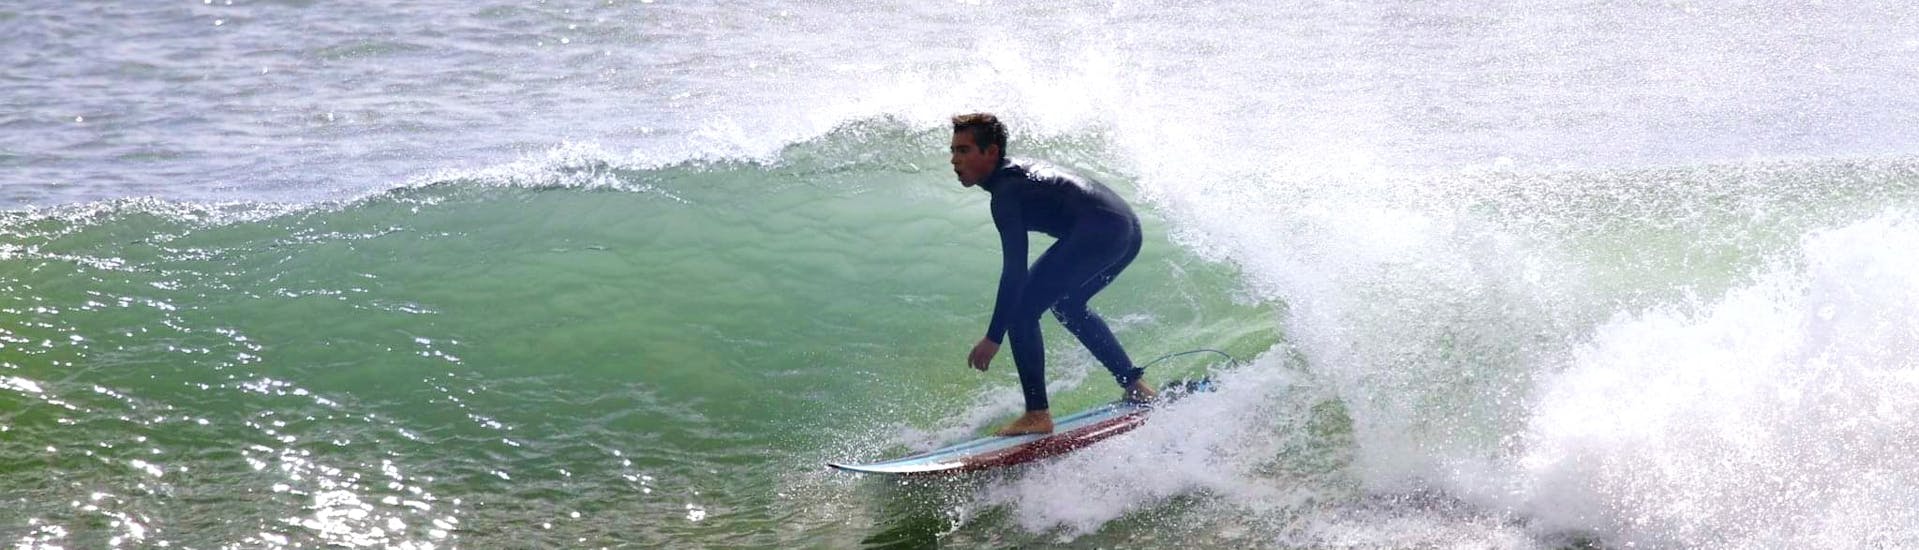 Surflessen in Costa da Caparica vanaf 4 jaar voor alle niveaus.